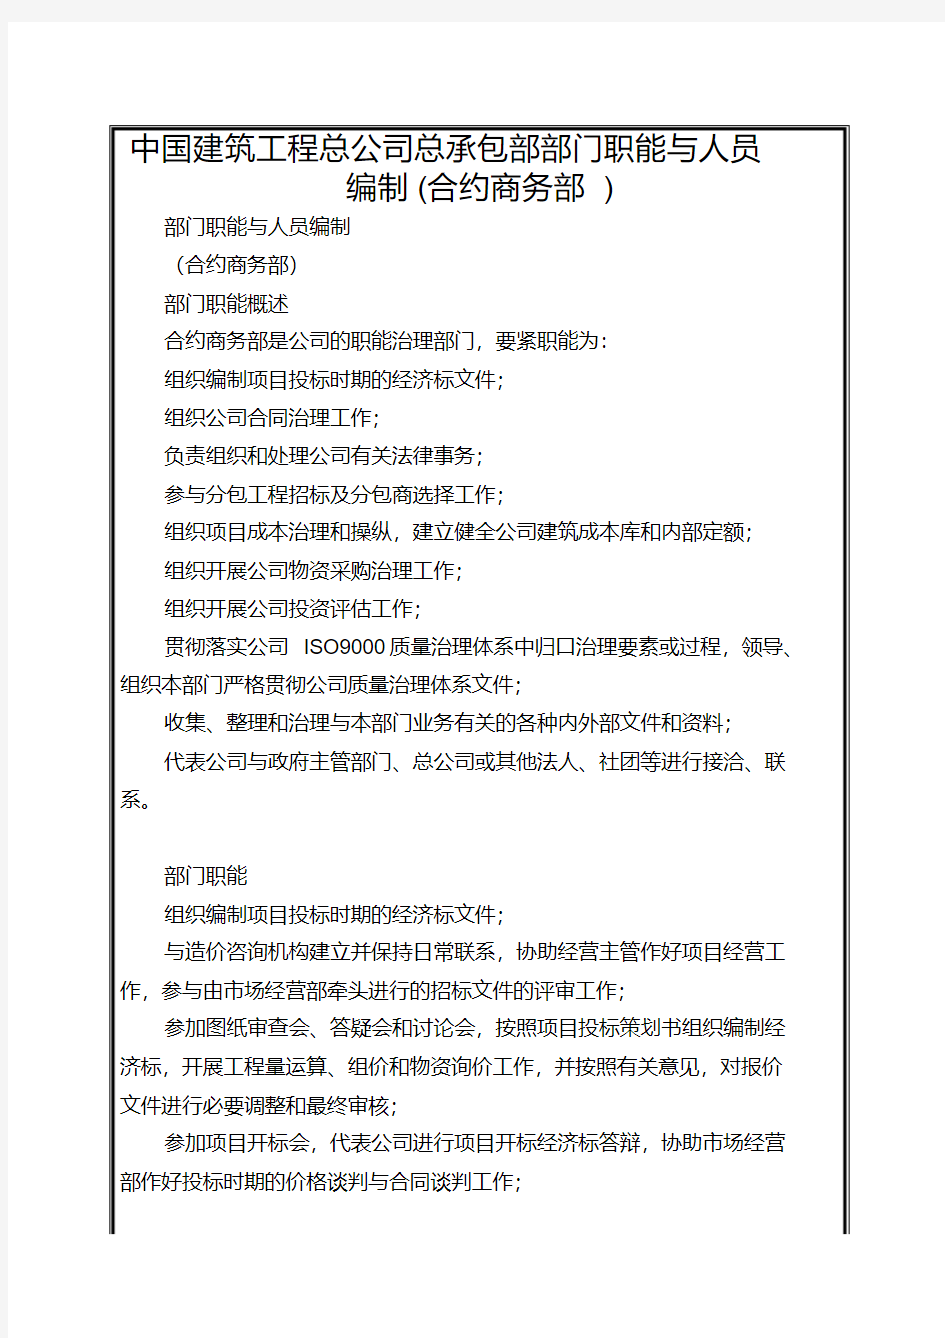 中国建筑工程总公司总承包部部门职能与人员编制(合约商务部)